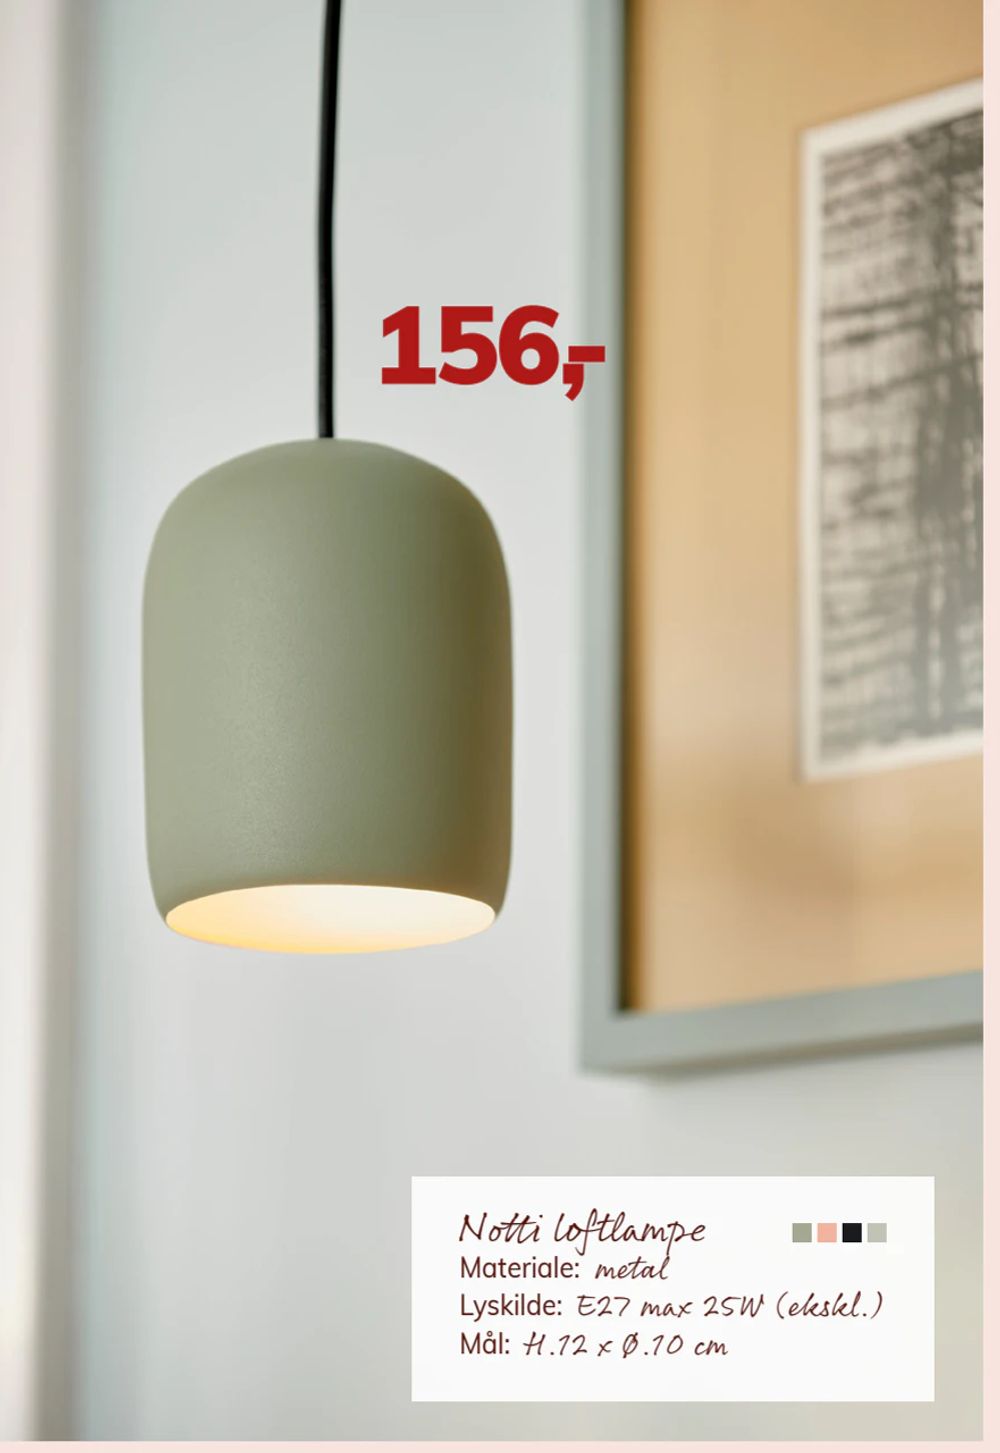 Tilbud på Notti loftlampe fra Daells Bolighus til 156 kr.